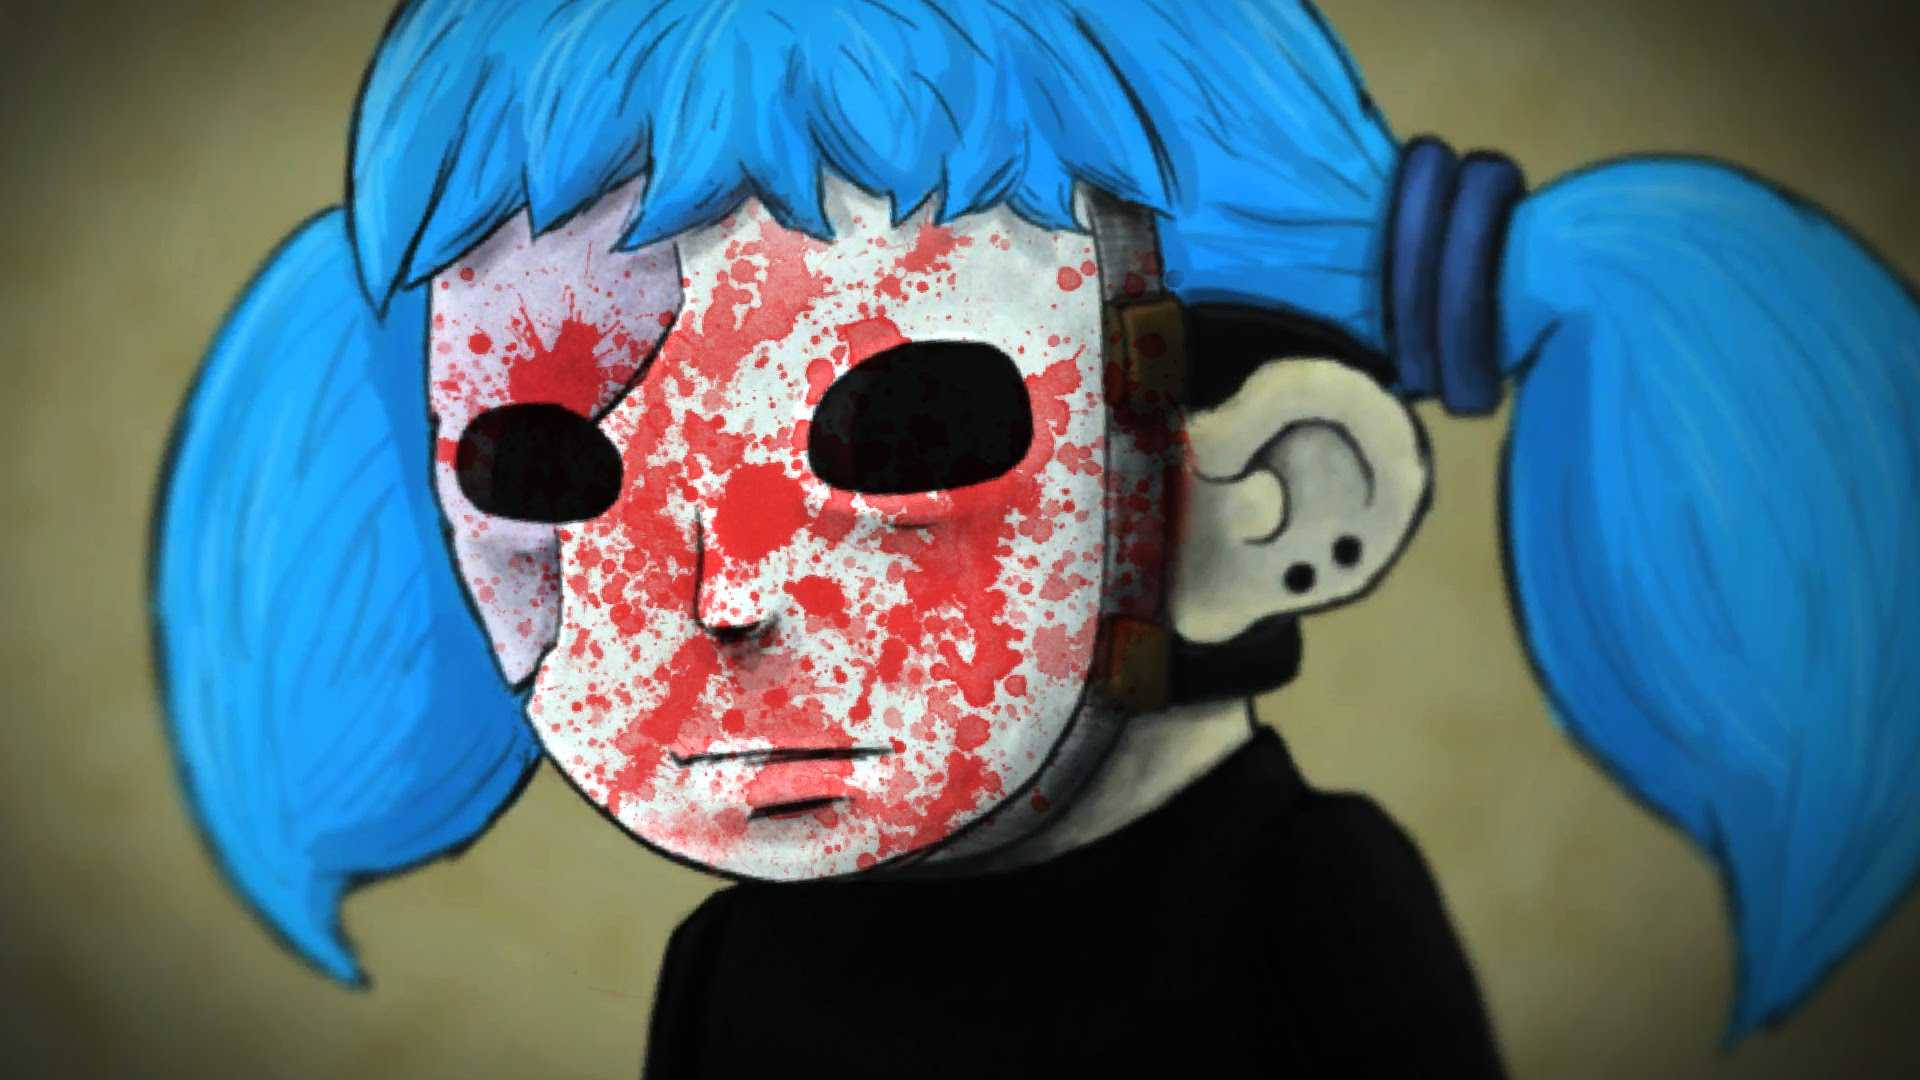 Horrific Figure Of Sally Face In Blood-splattered Mask